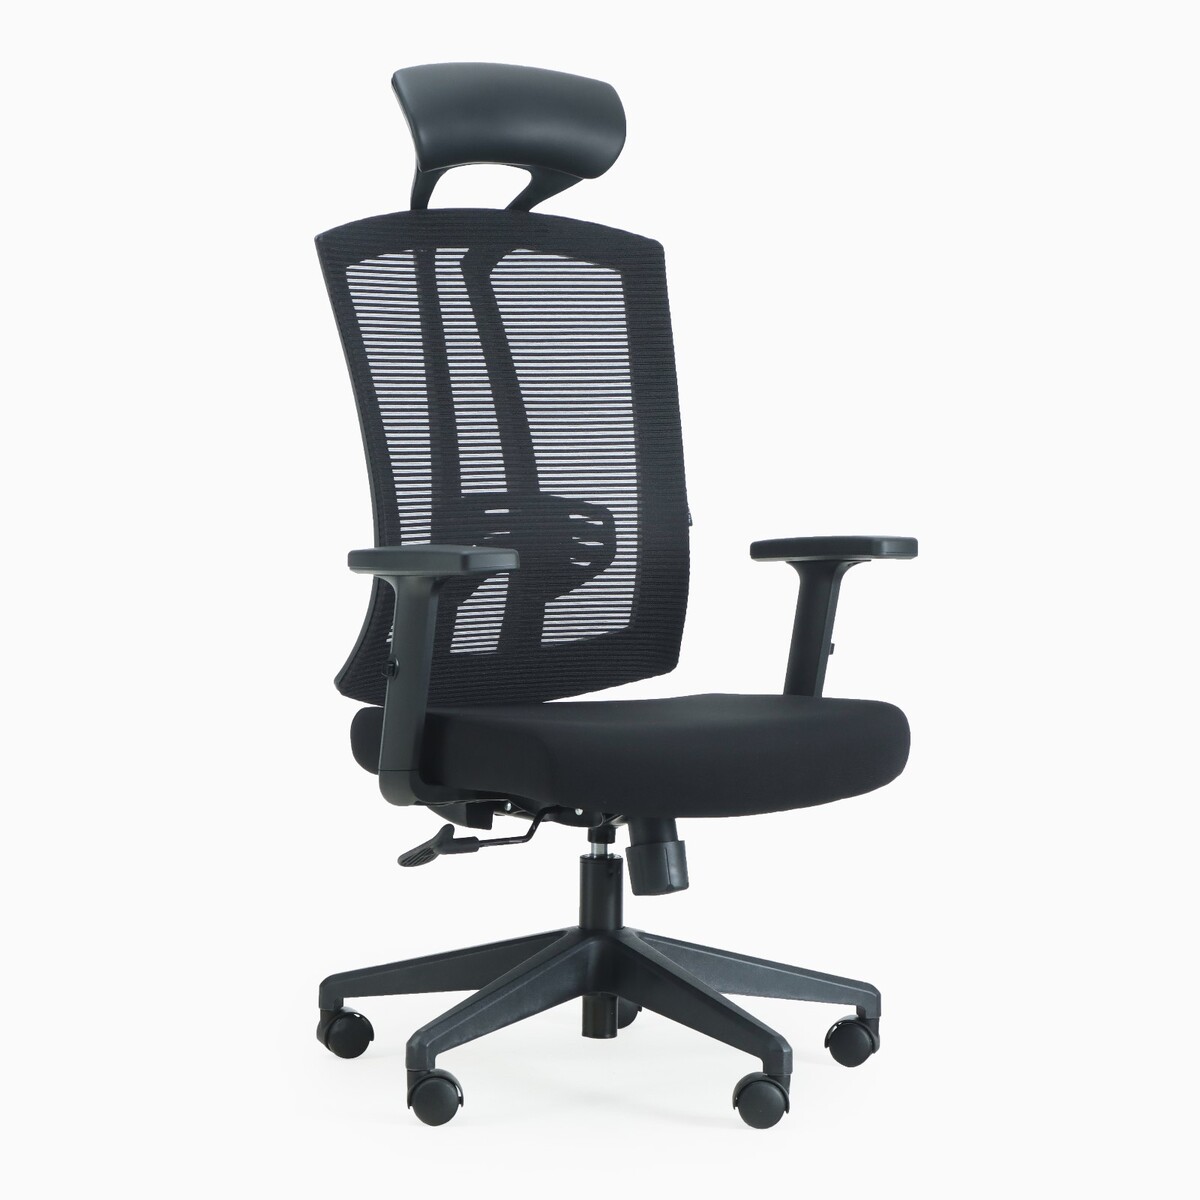 Кресло эргономичное клик мебель 2156, черное кресло эргономичное клик мебель 2156 черное